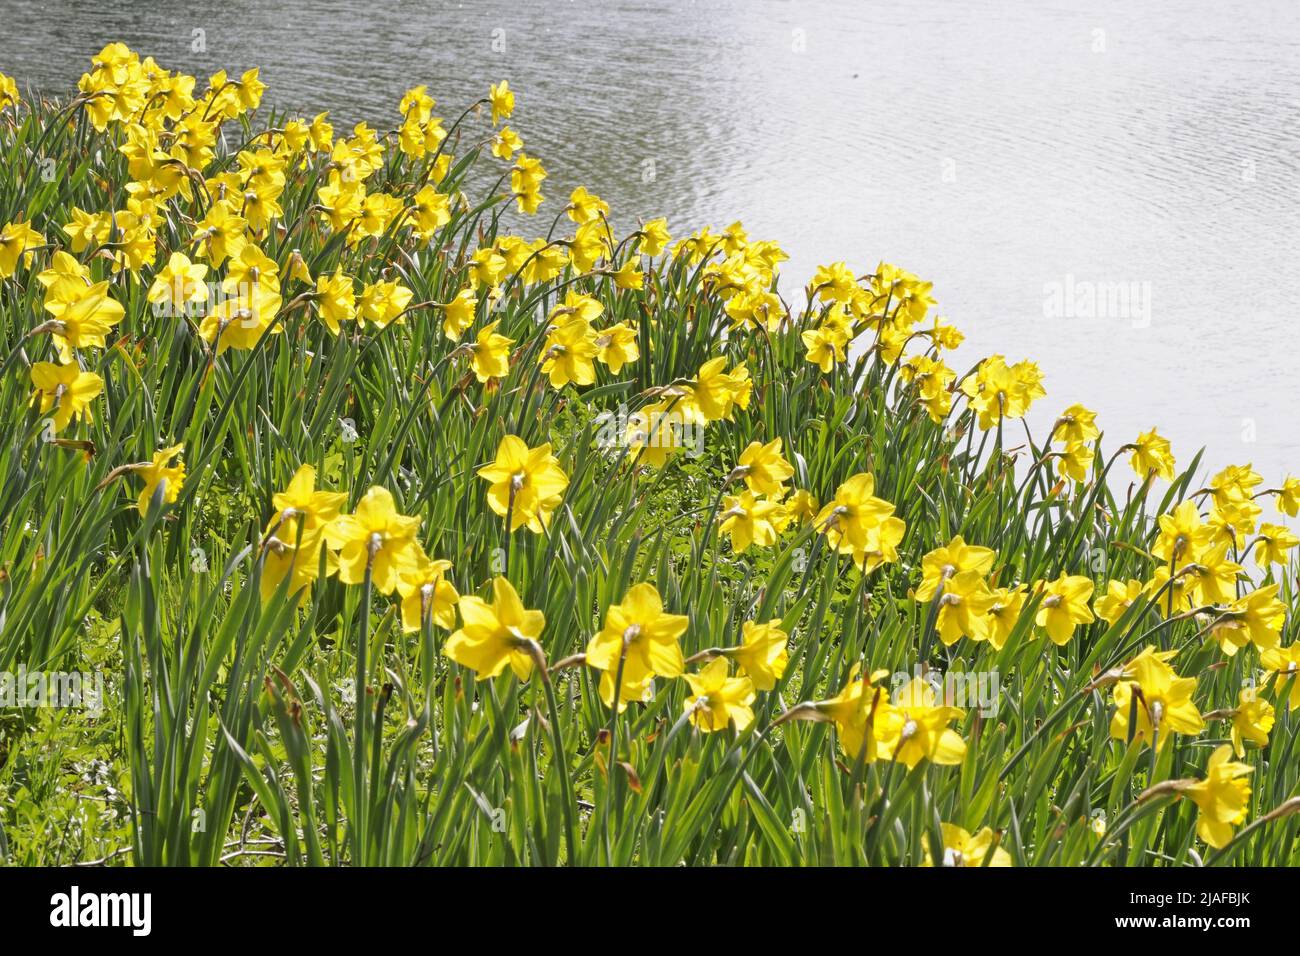 daffodil (spéc. De Narcisse), jonquilles sur une pente à un étang dans un parc Banque D'Images